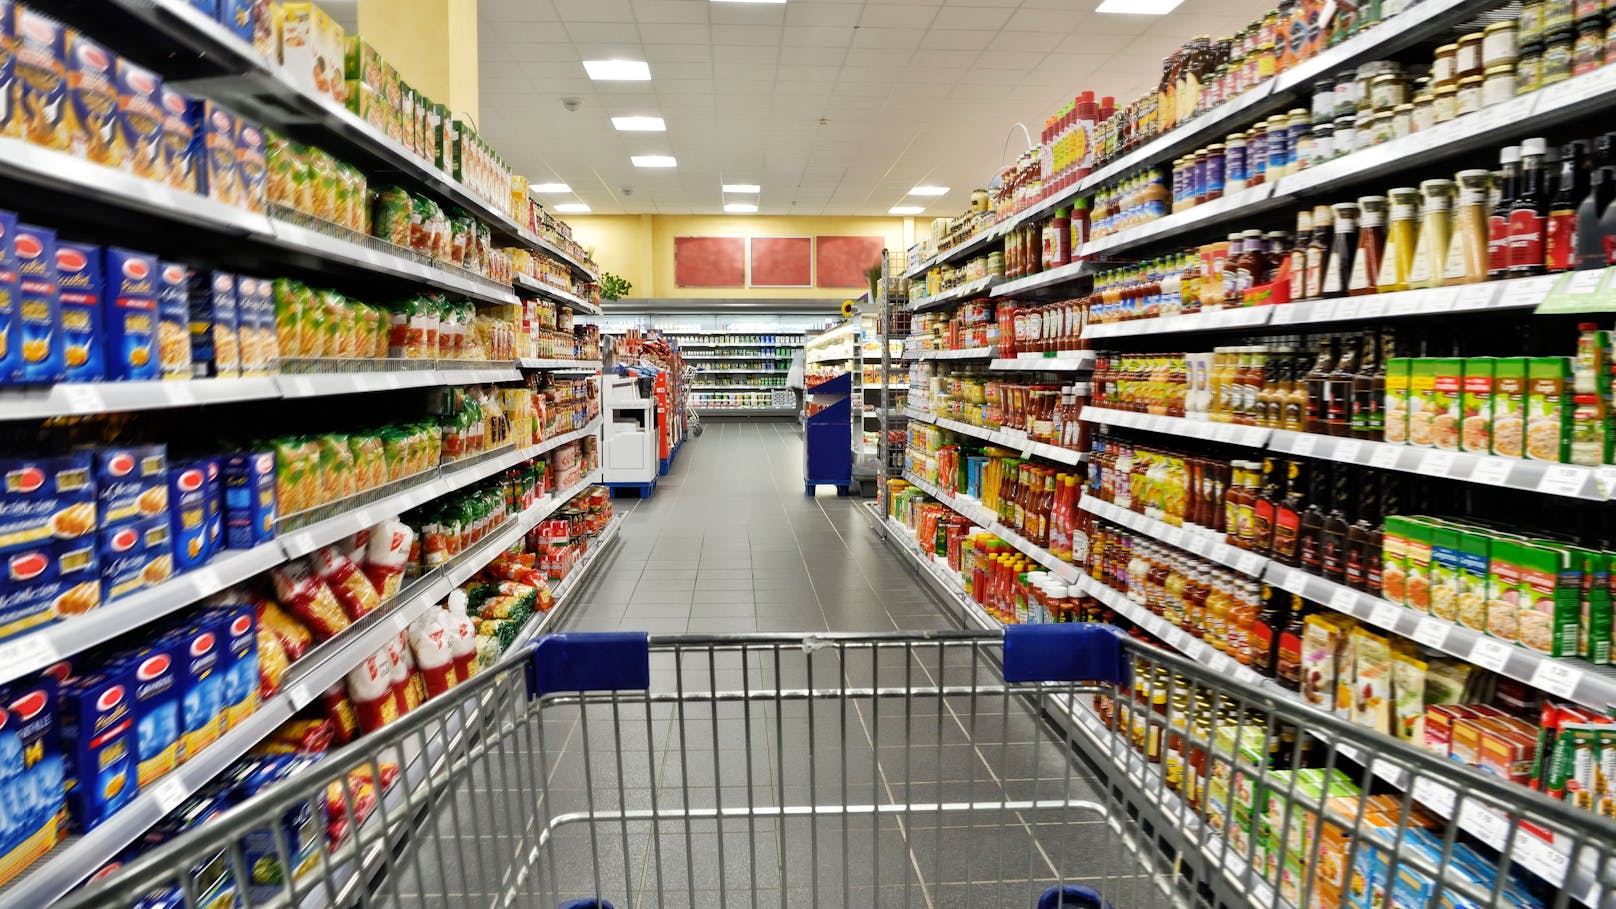 "Krebserregend" – Supermarkt verbannt Zutat aus Regalen